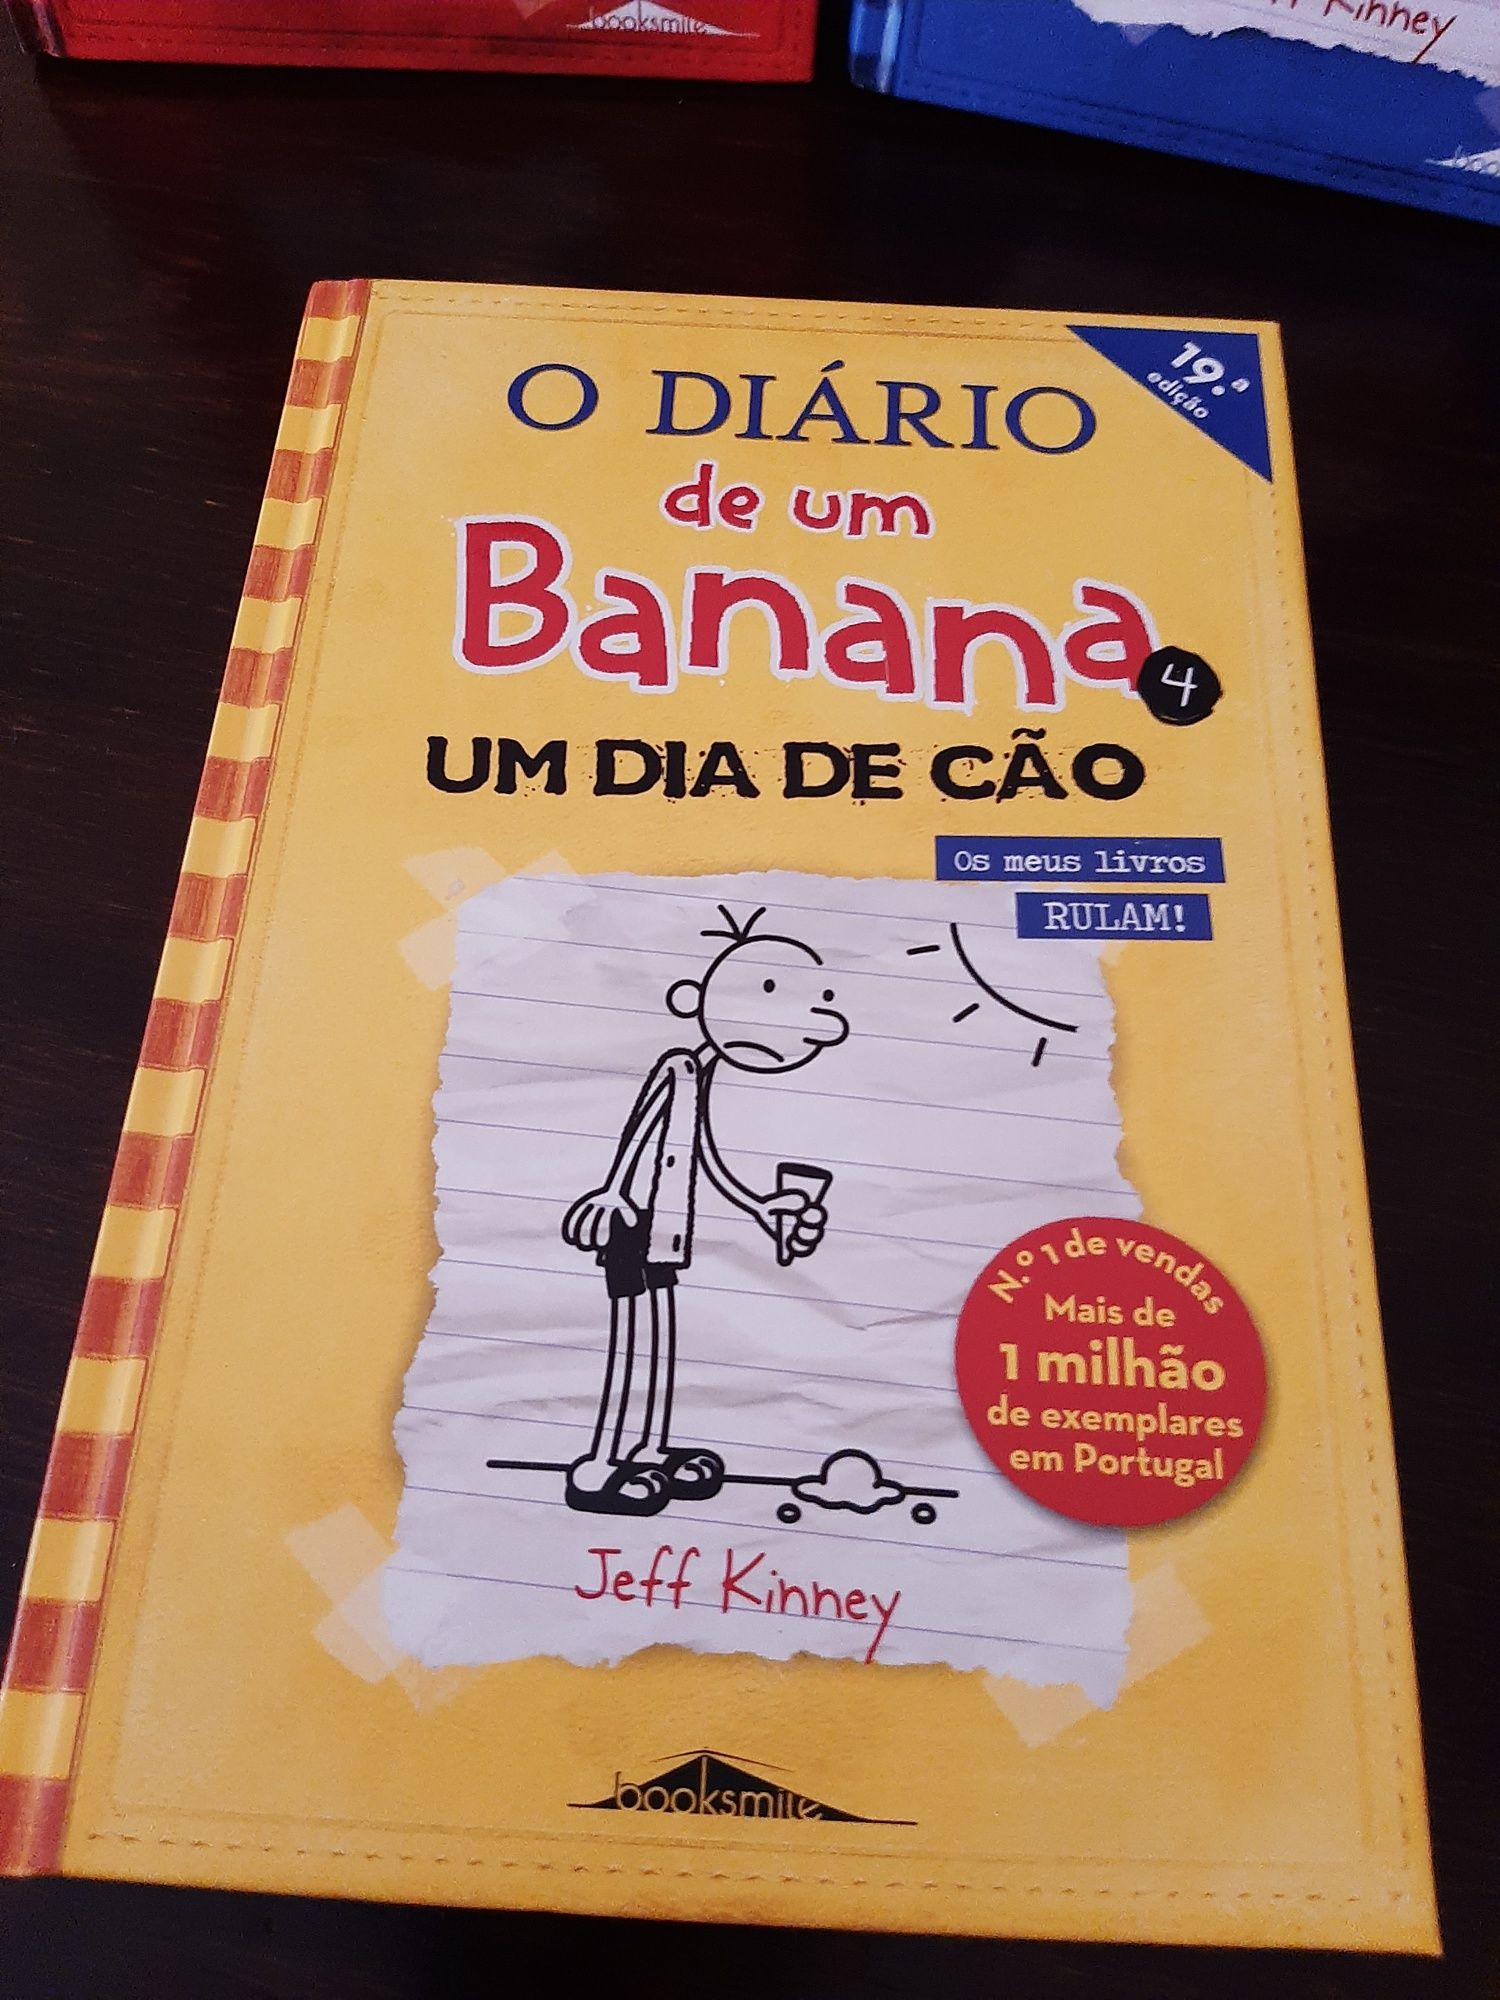 Livros "Diário de um Banana"